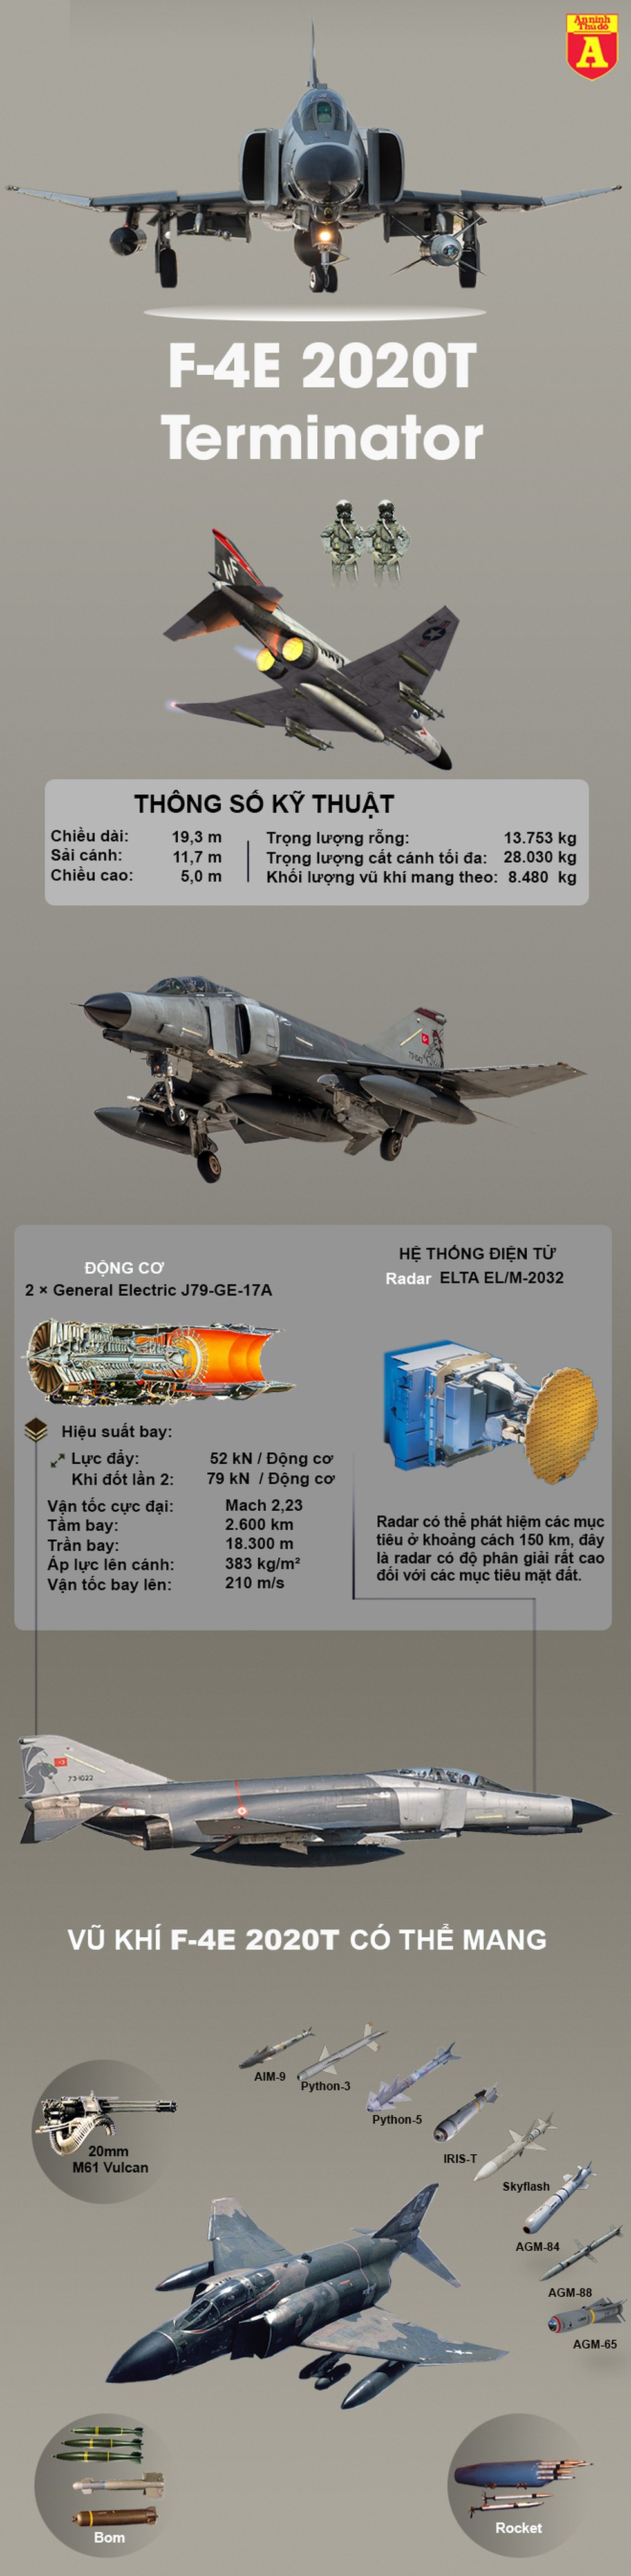 [Infographics] Thổ Nhĩ Kỳ sẽ tung "Kẻ hủy diệt" F-4E 2020T từng thắng áp đảo Su-27 vào chiến địa Syria - Ảnh 1